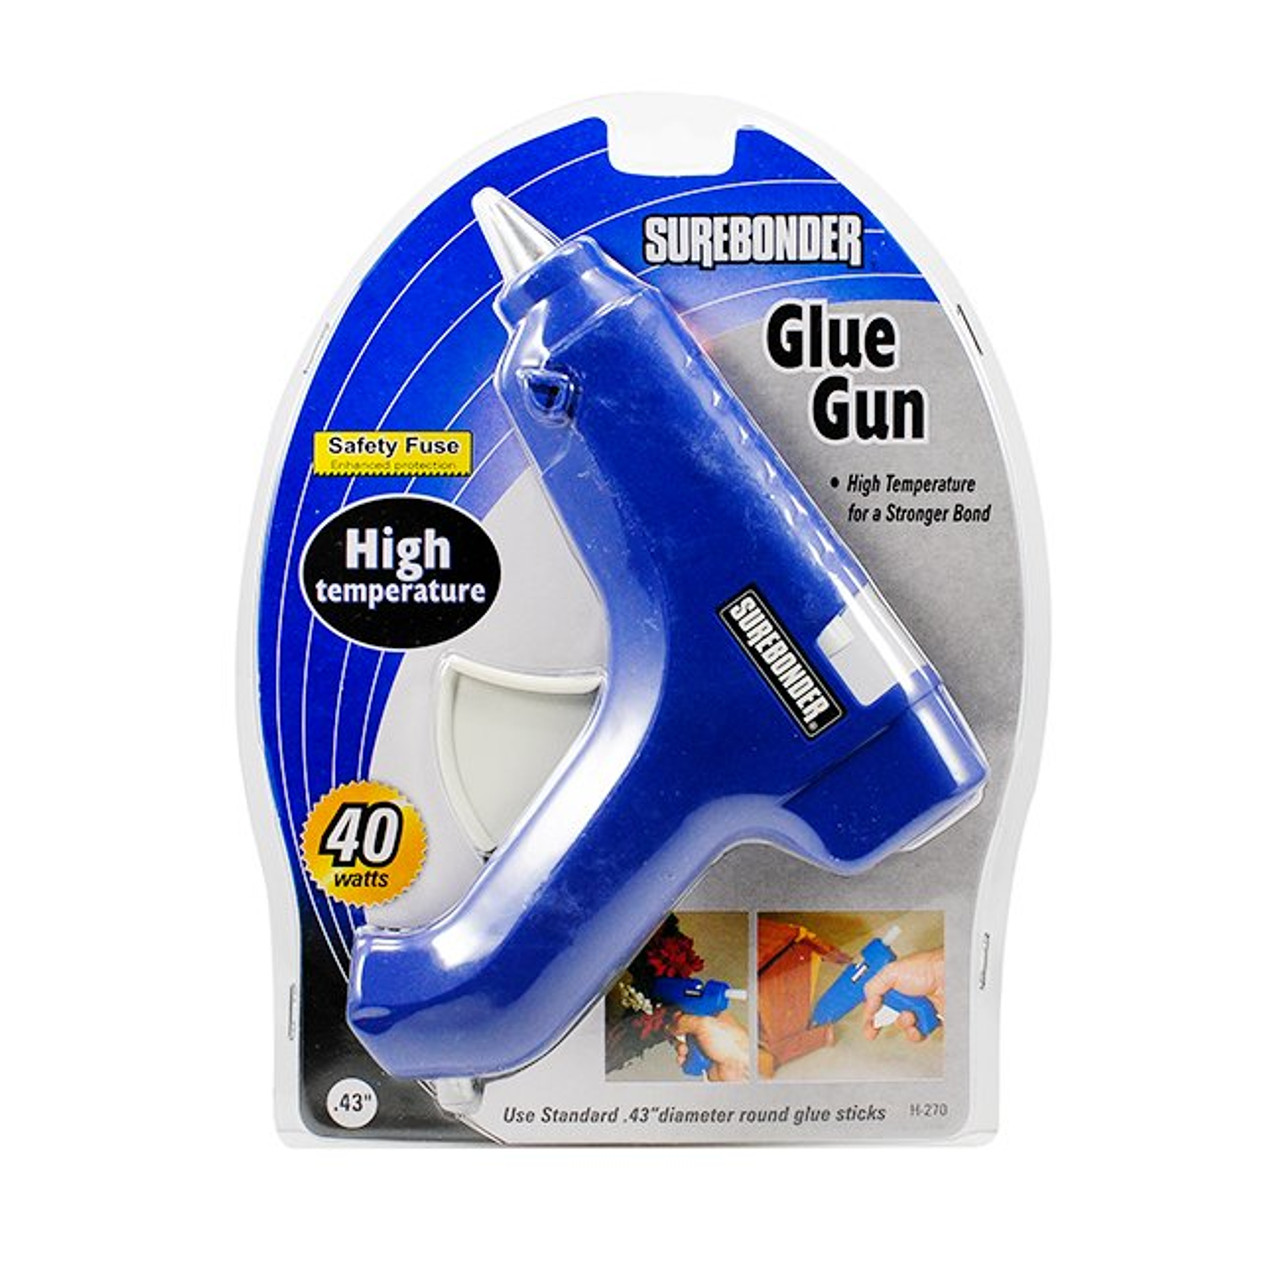 Surebonder Glue Gun - High Temp